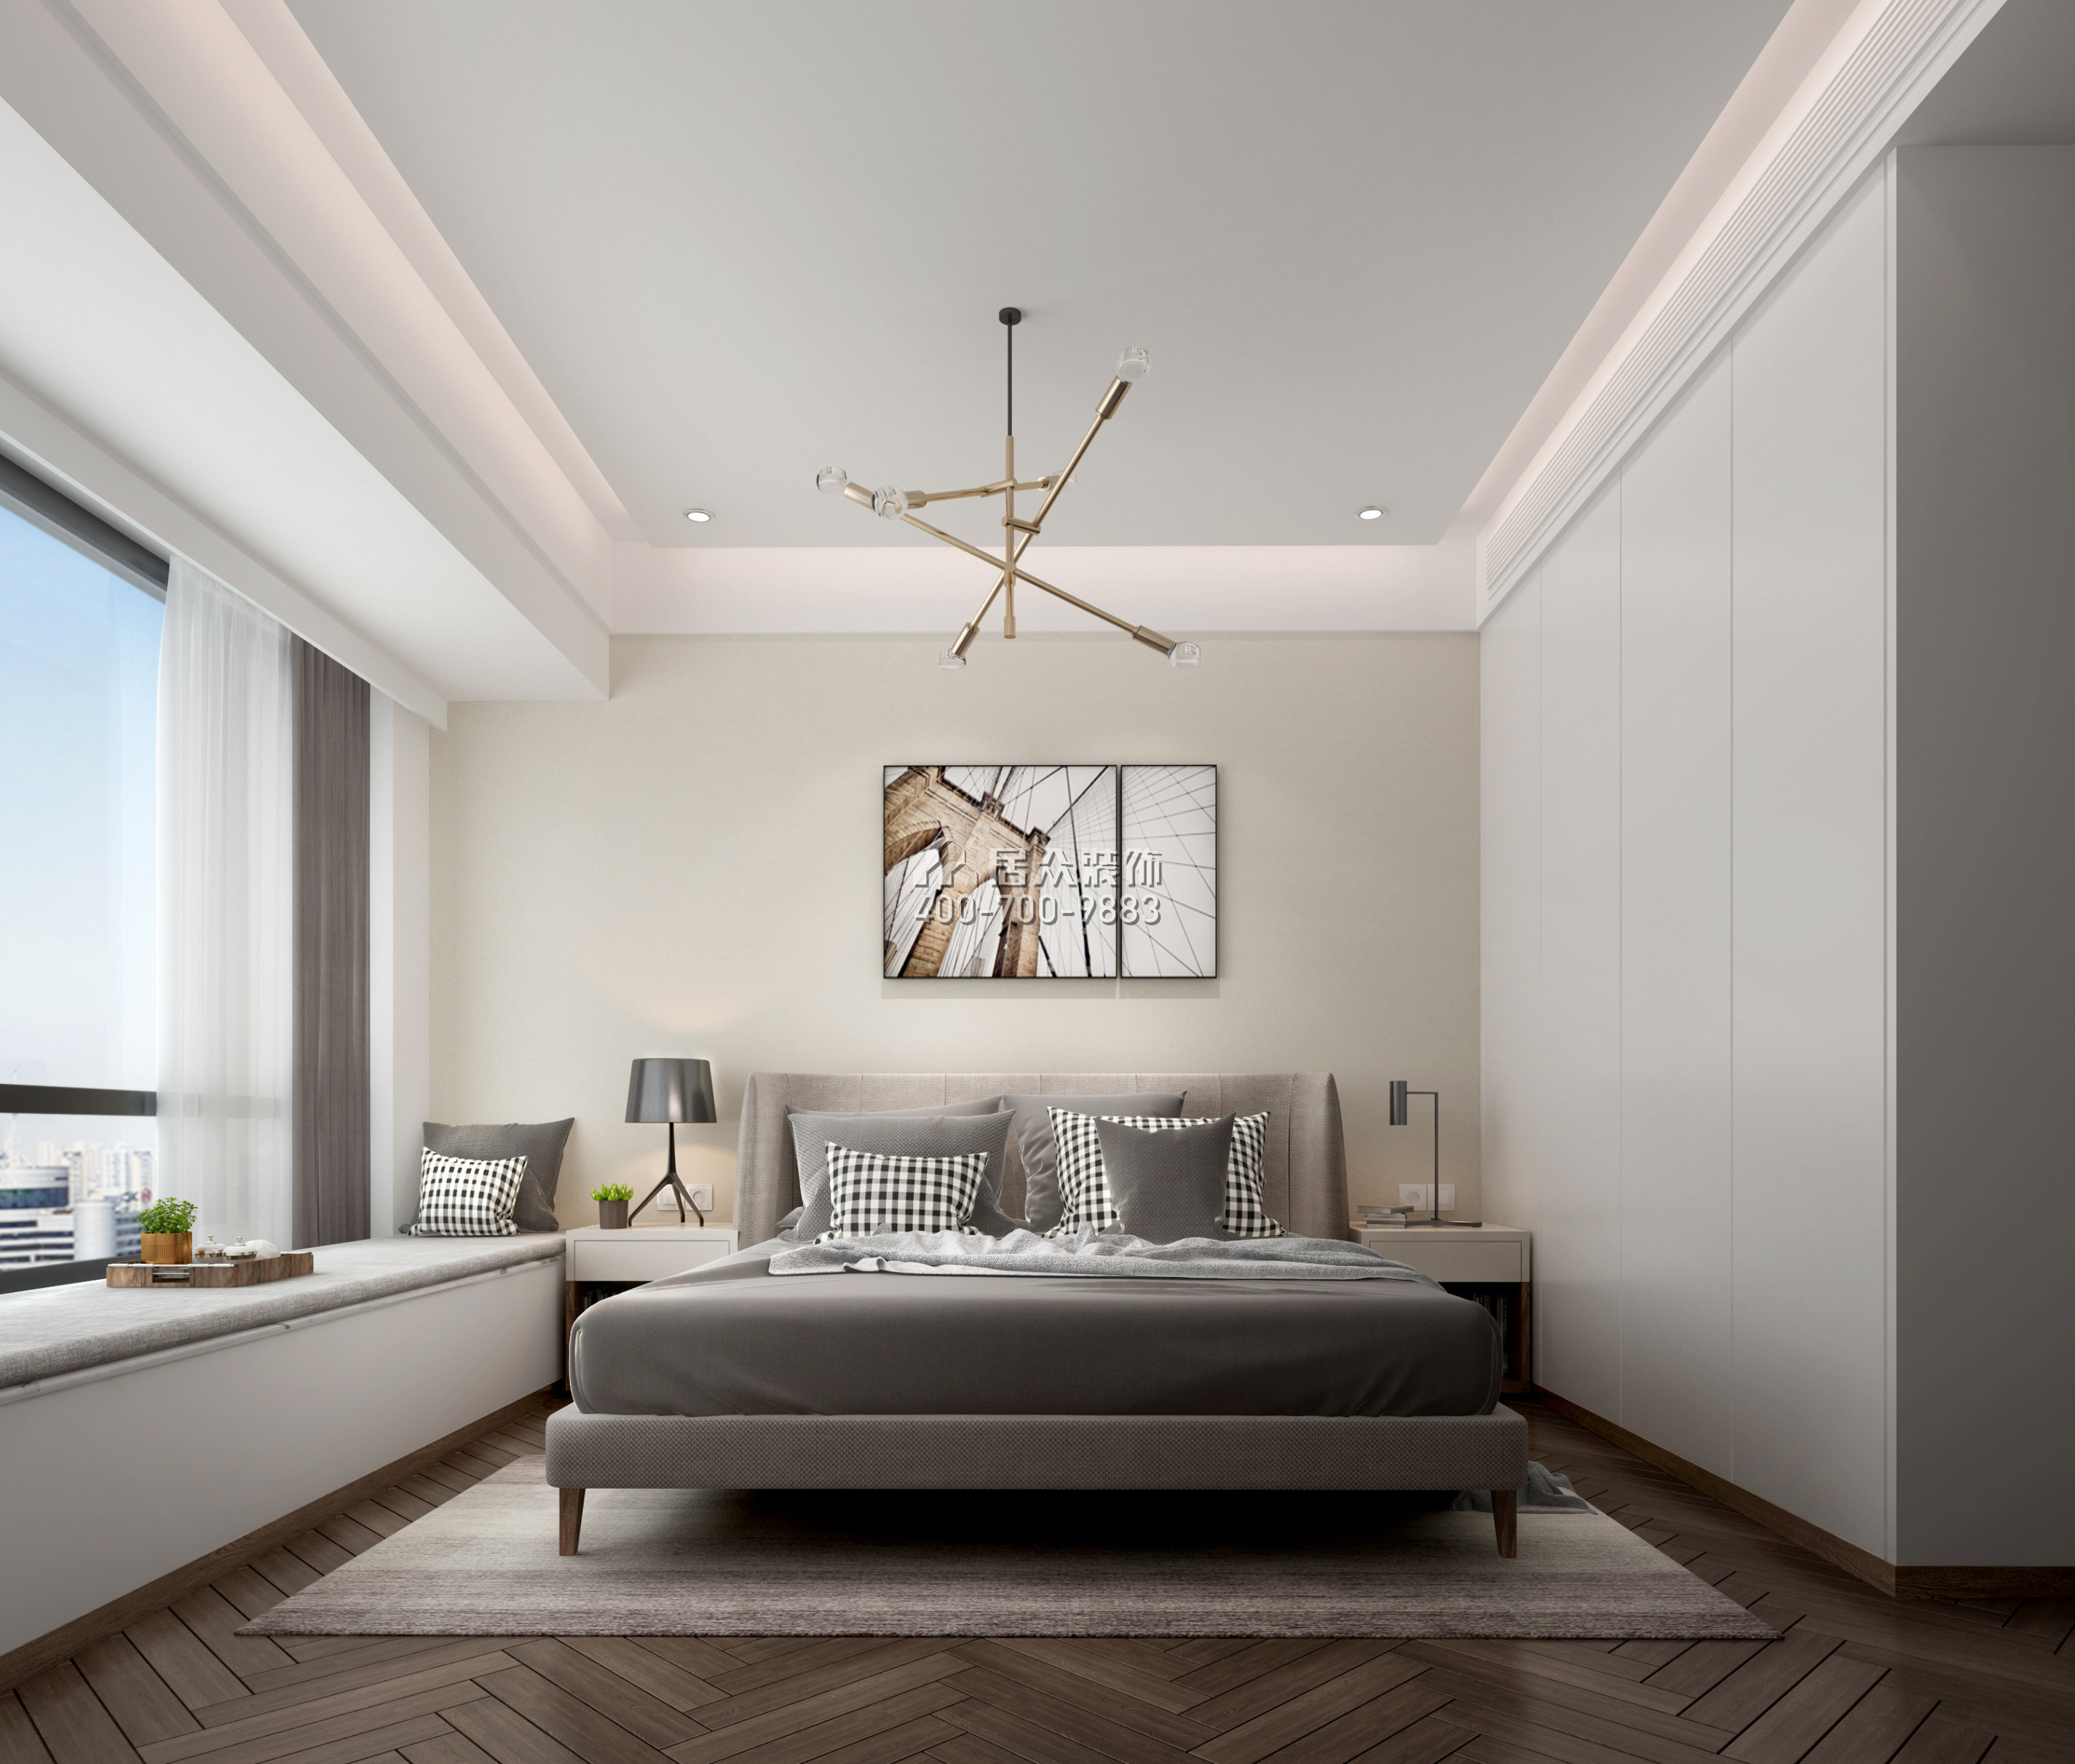 香山里花园五期127平方米现代简约风格平层户型卧室装修效果图